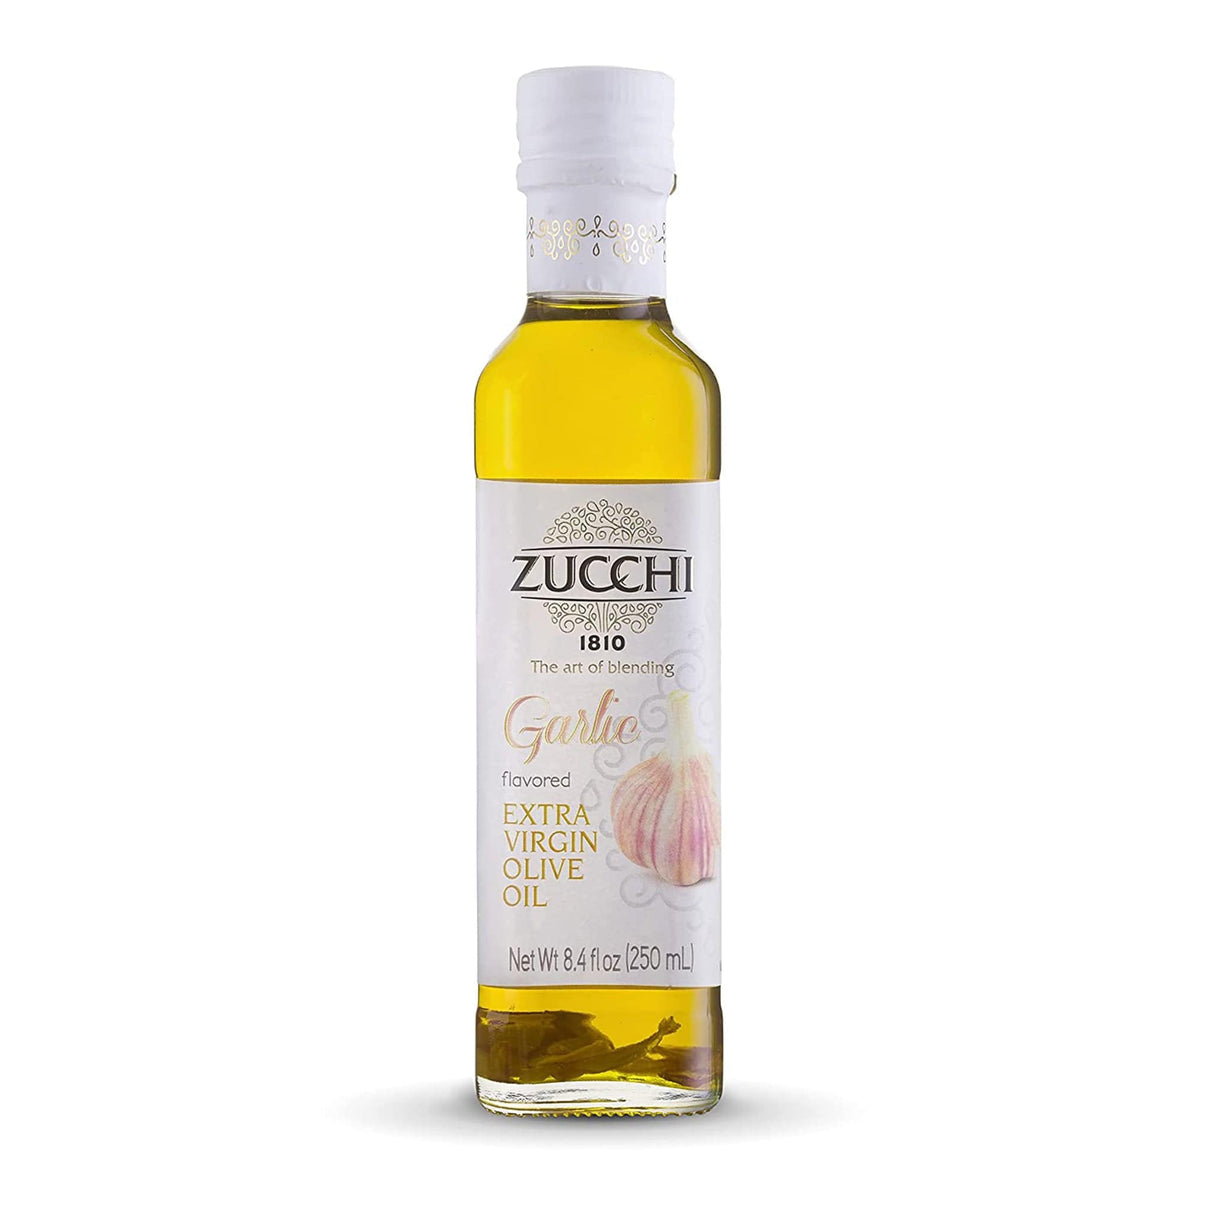 Zucchi Garlic Flavored Extra Virgin Olive Oil